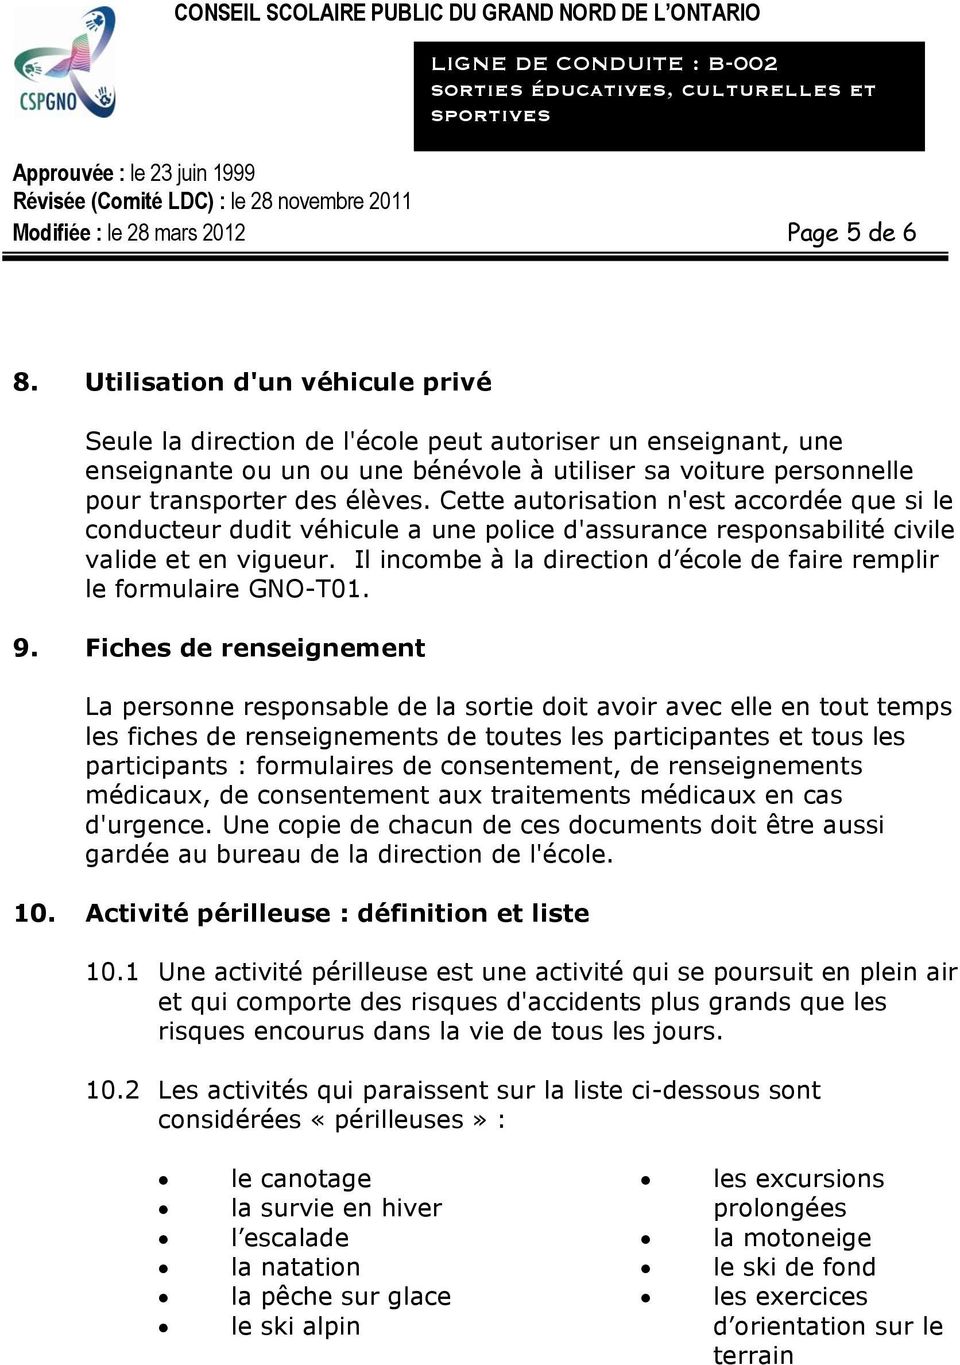 Cette autorisation n'est accordée que si le conducteur dudit véhicule a une police d'assurance responsabilité civile valide et en vigueur.